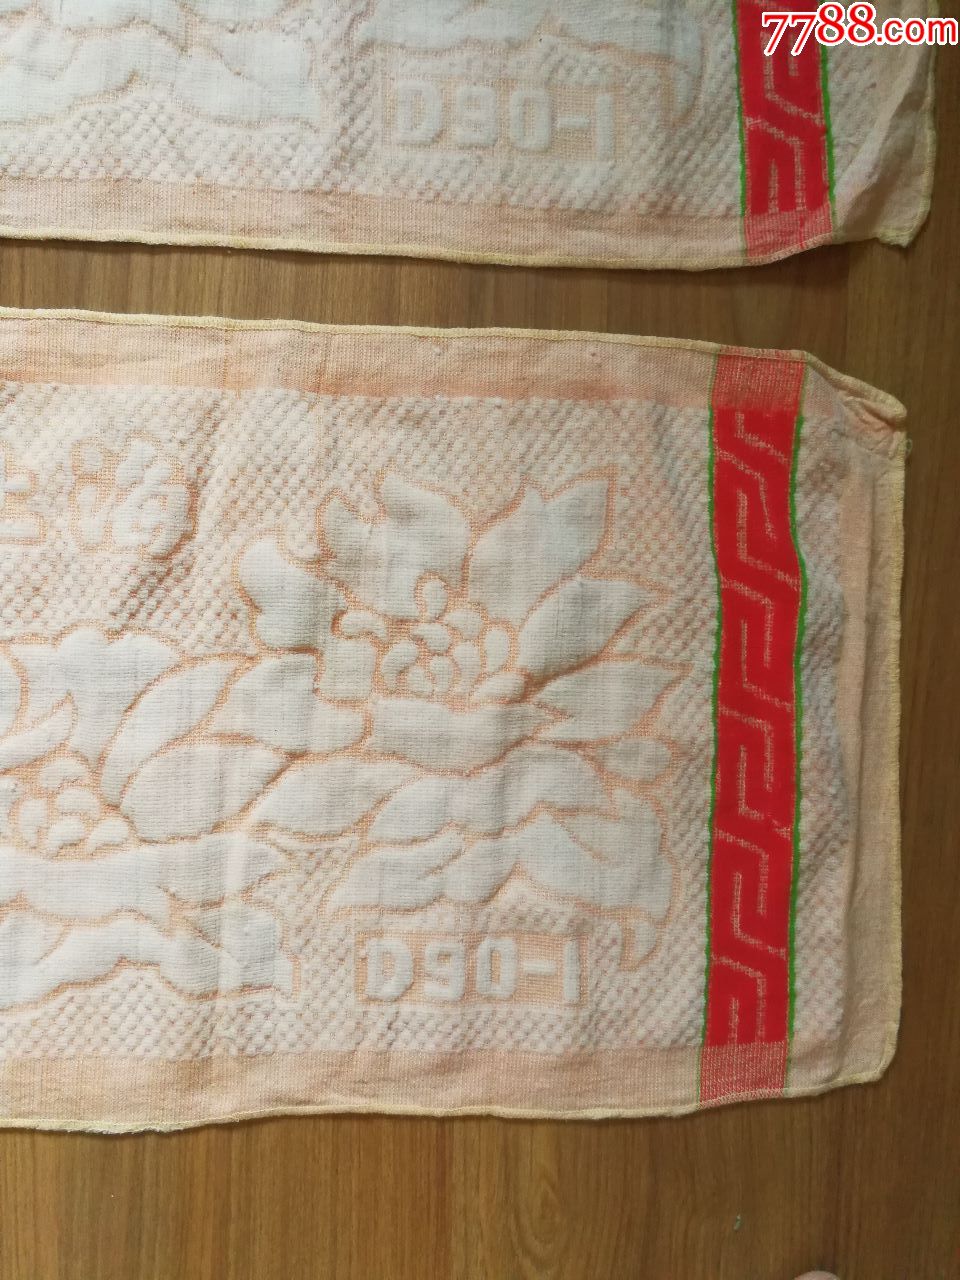 老式全新早期上海出品纯棉枕巾一对